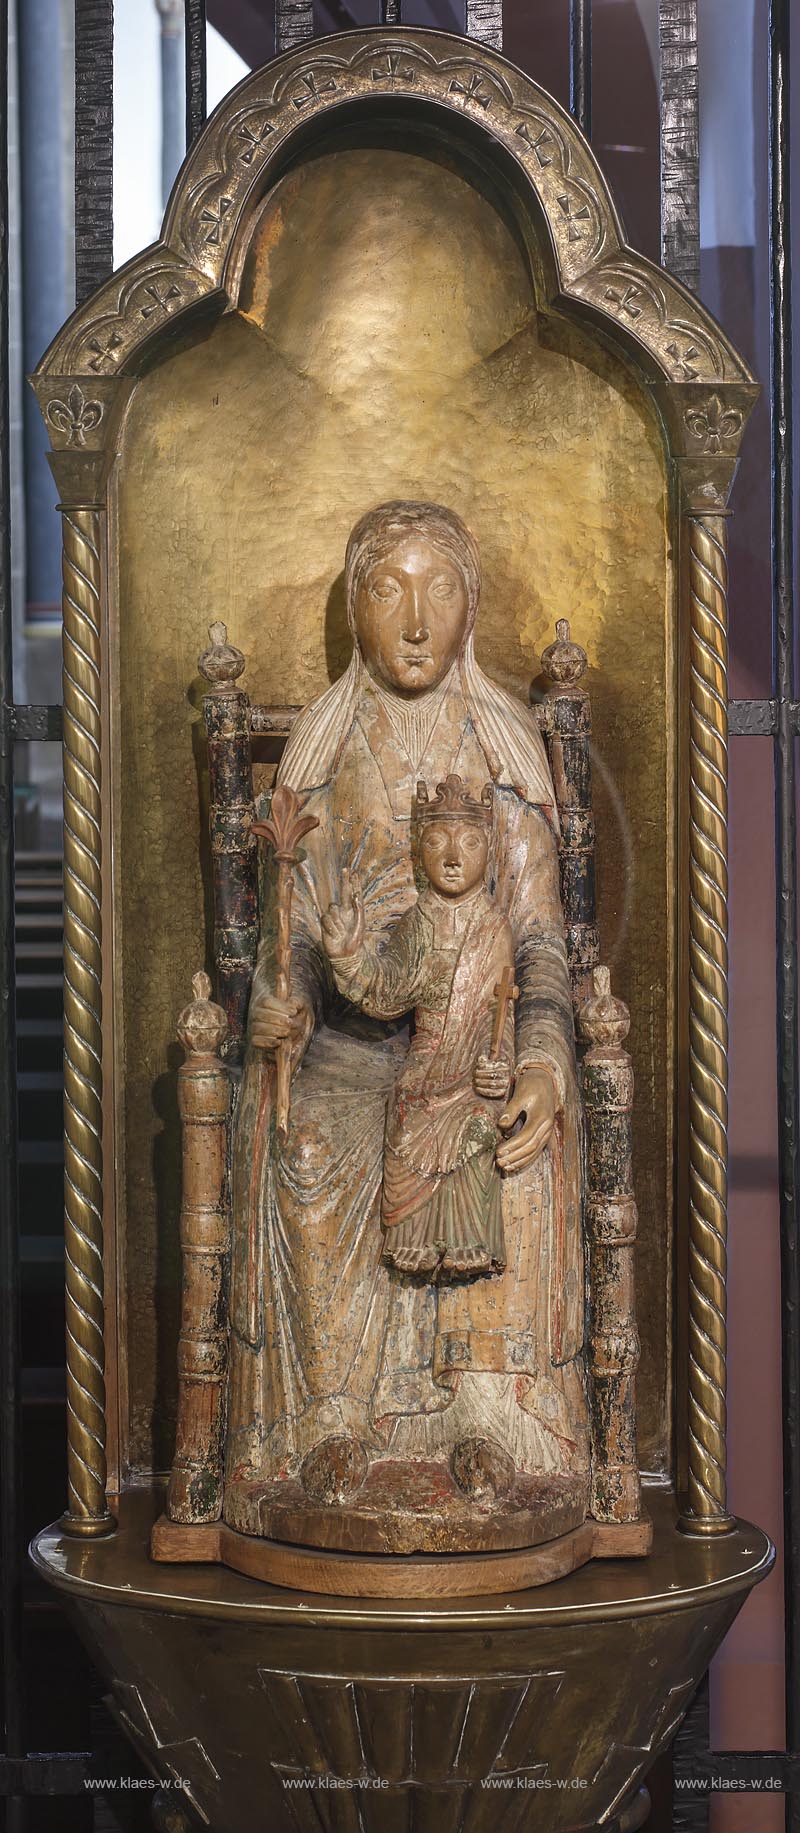 Zuelpich Hoven, "Hovener Madonna" in der Klosterkirche von Kloster Marienborn, einem ehemaliges Zisterzienserinnenkloster. die Hovener Madonna ist eine der bedeutendsten romanischen Skulpturen des Rheinlandes aus dem 12. Jahrhundert; Zuelpich Hoven, sculpture "Hovener Madonna" in cloisterchurch of cloister Marienborn. 